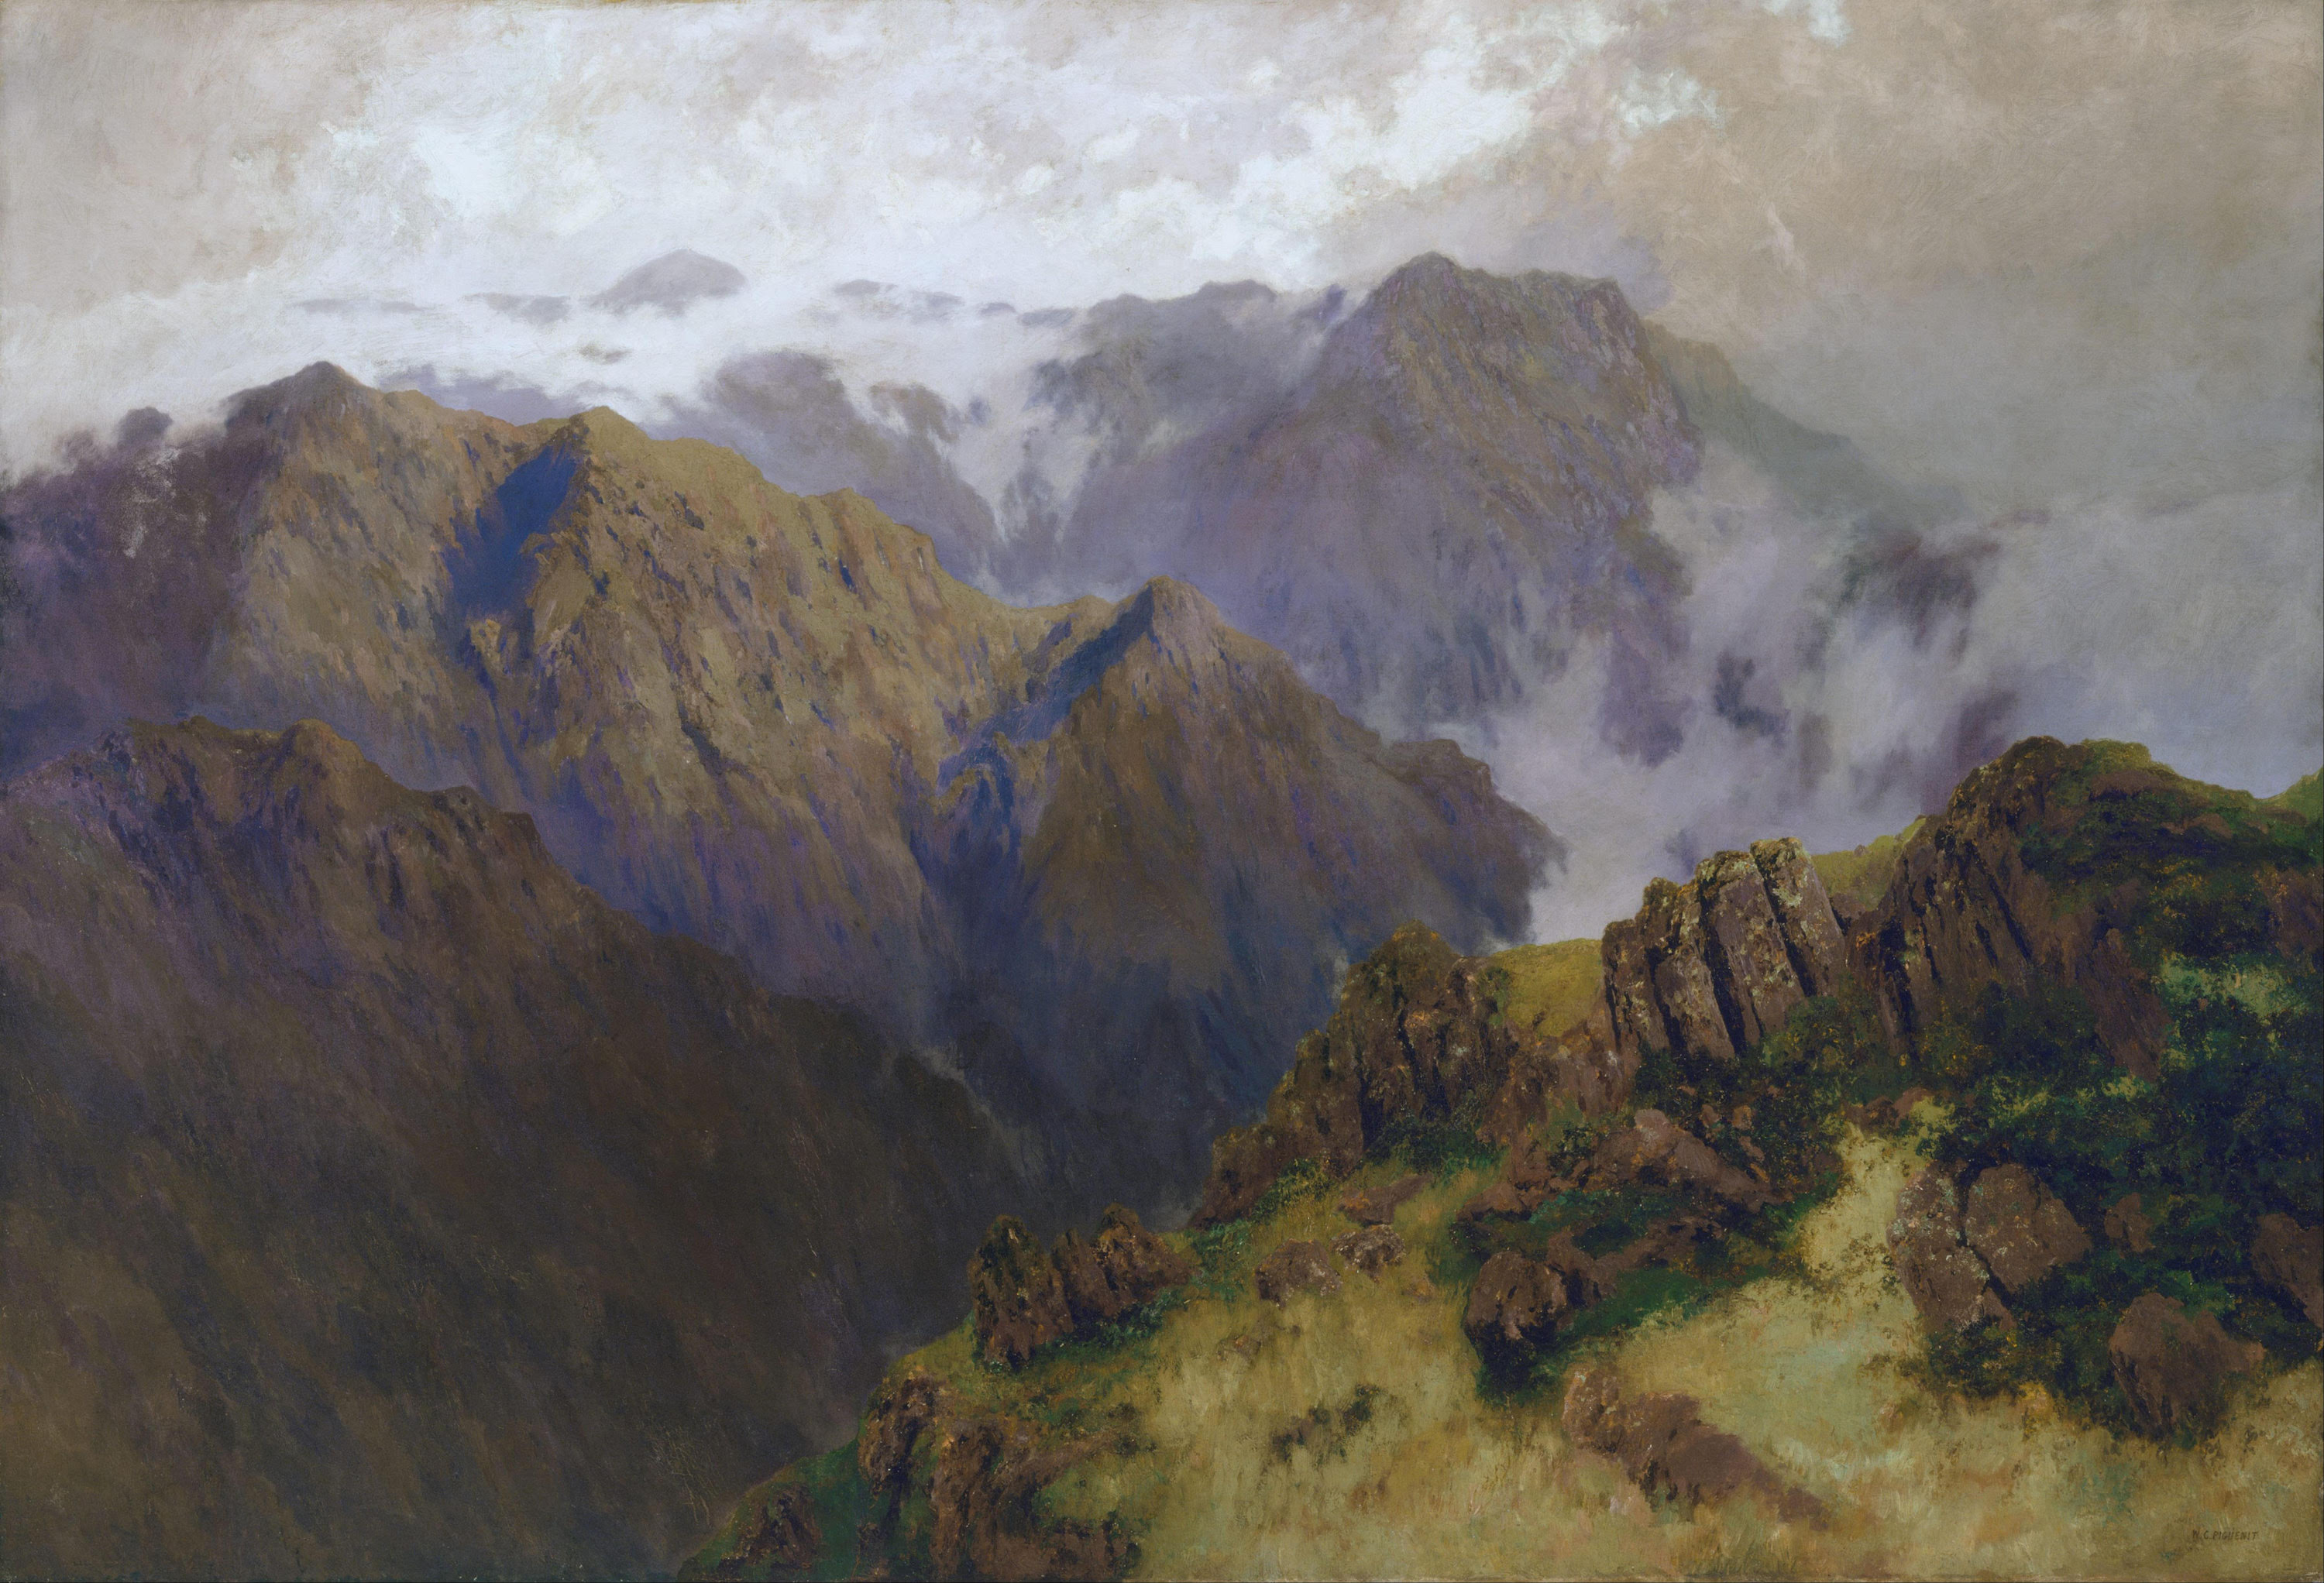 Góra Kościuszki by W​illiam Piguenit - 1903 - 179.2 x 261.6 cm 